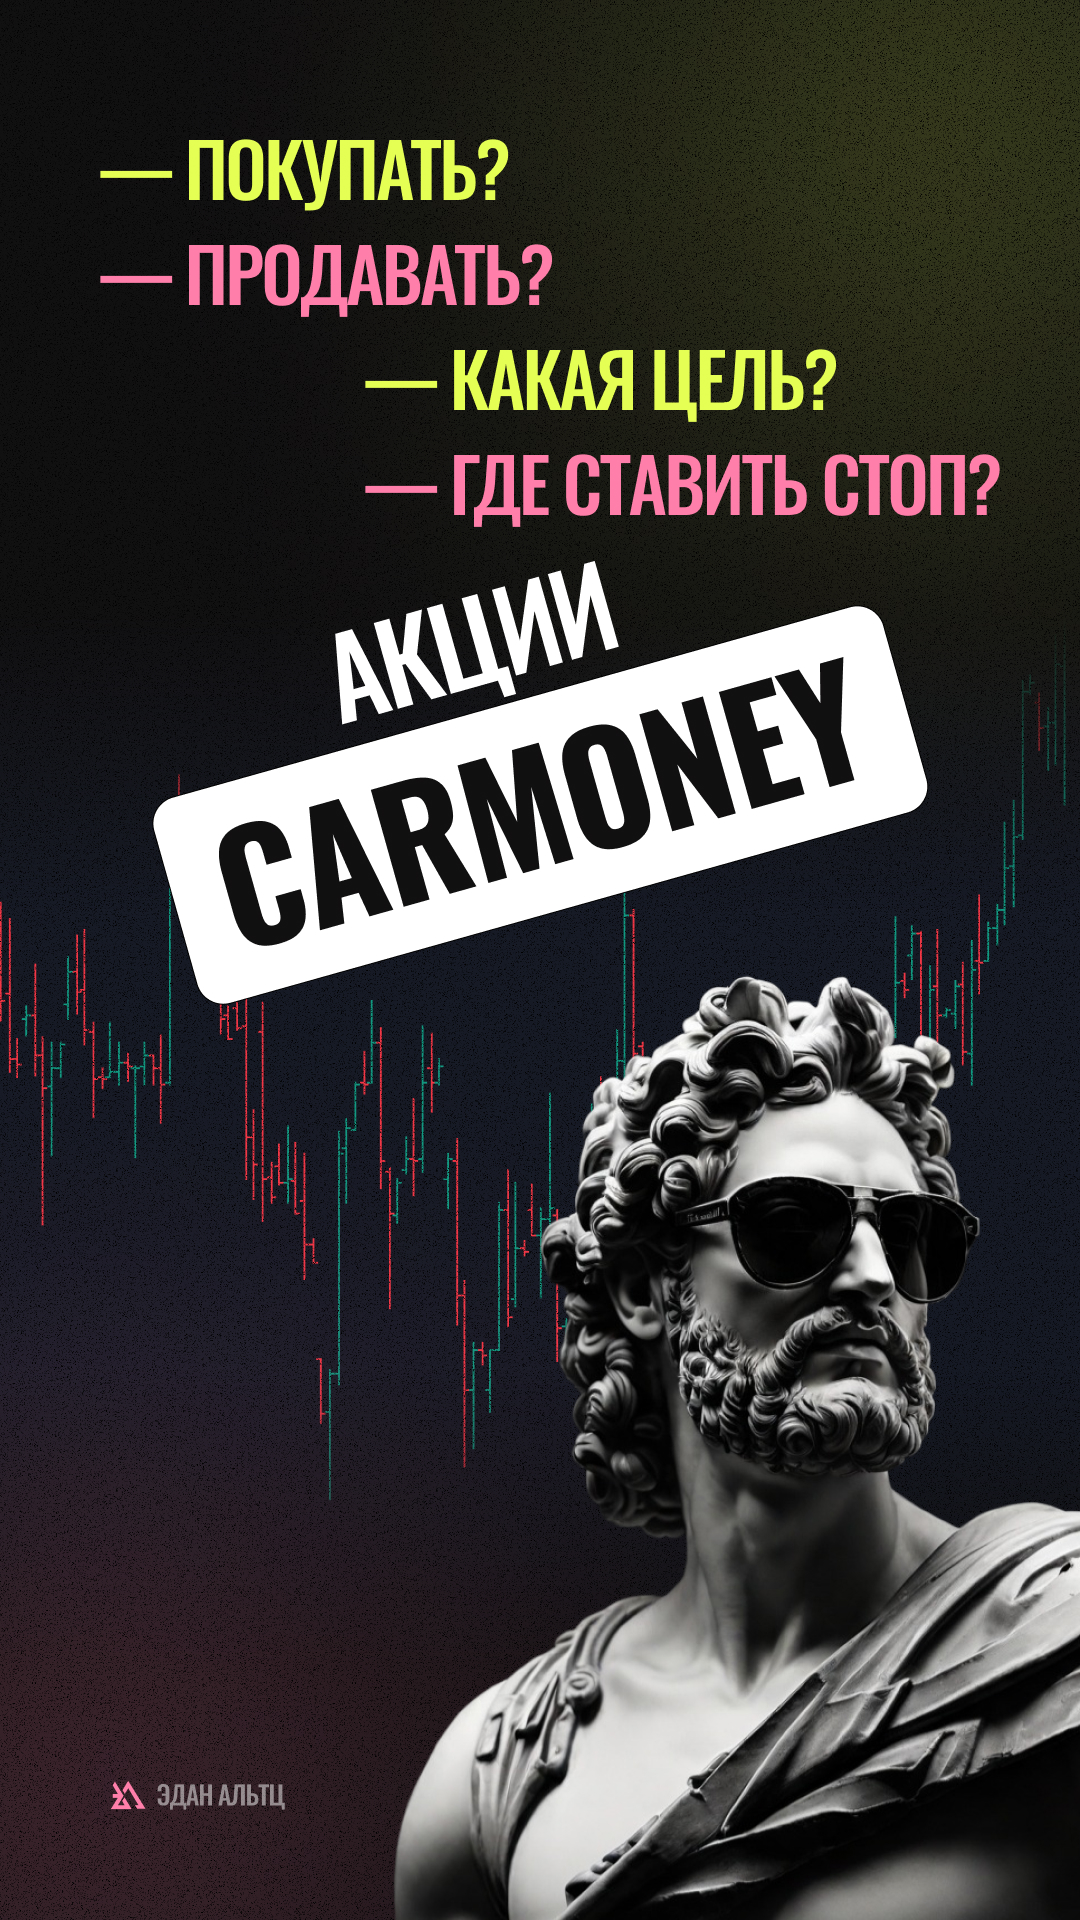 Акции CarMoney $CARM — идея \ цели \ стопы \ обзор